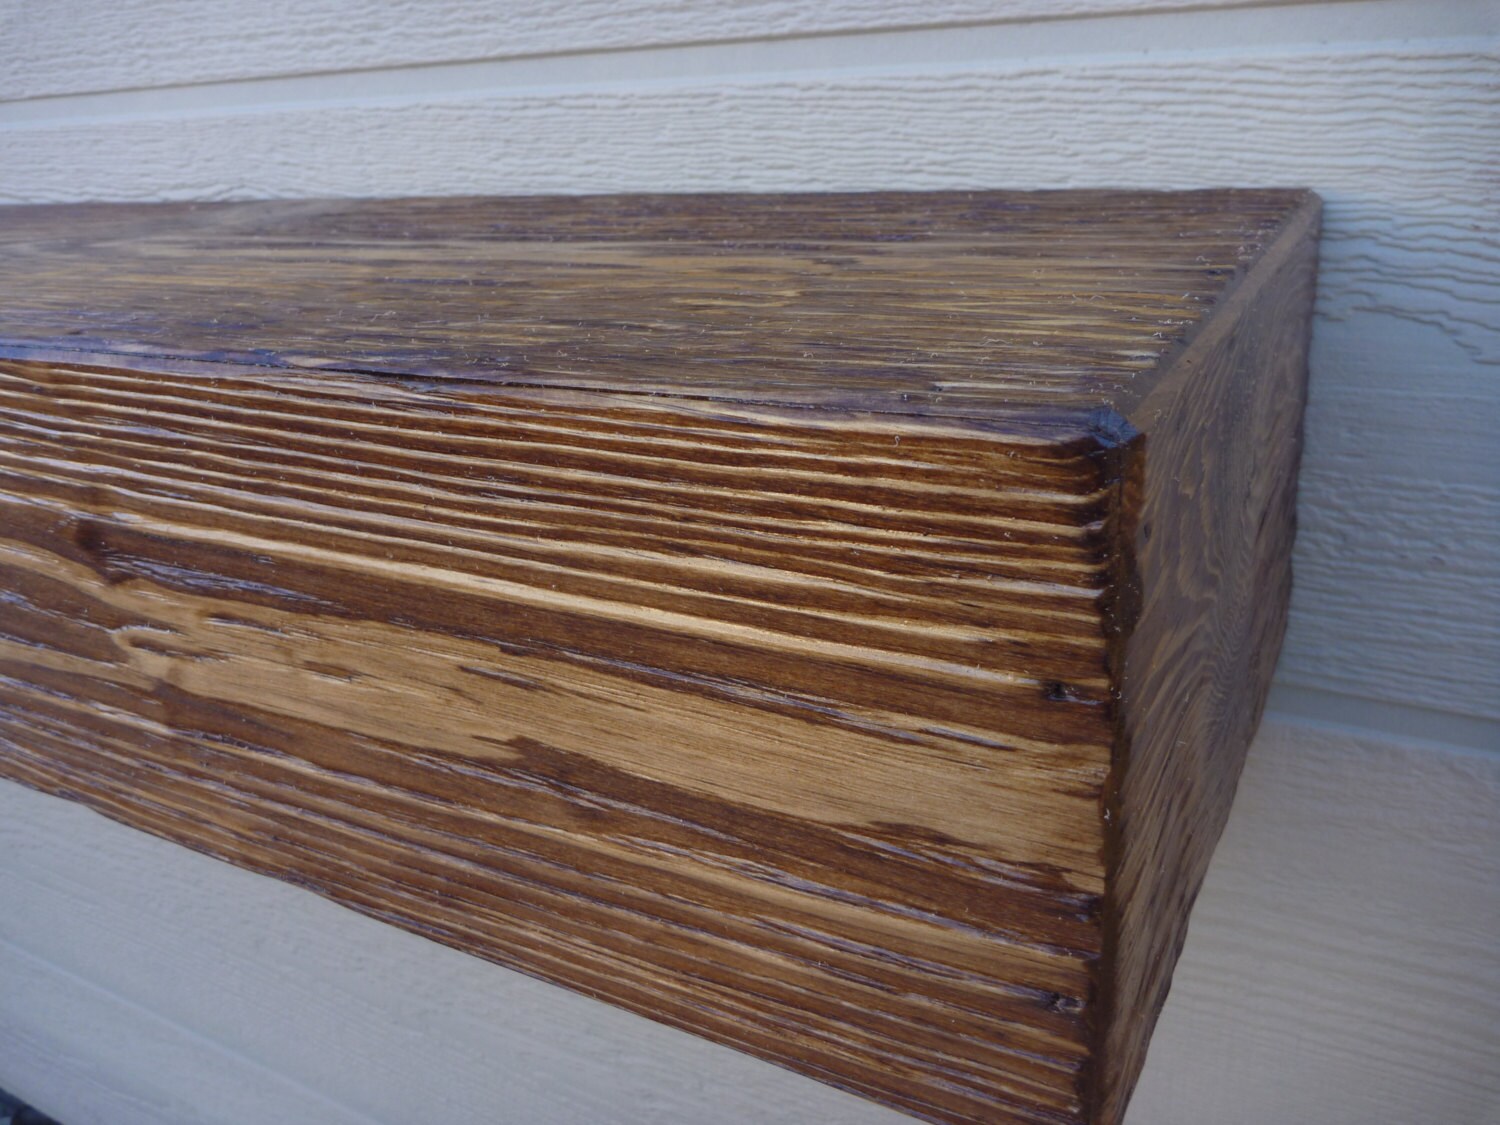 Foundry Select Bartholomew Solid Teak Wood Mantel